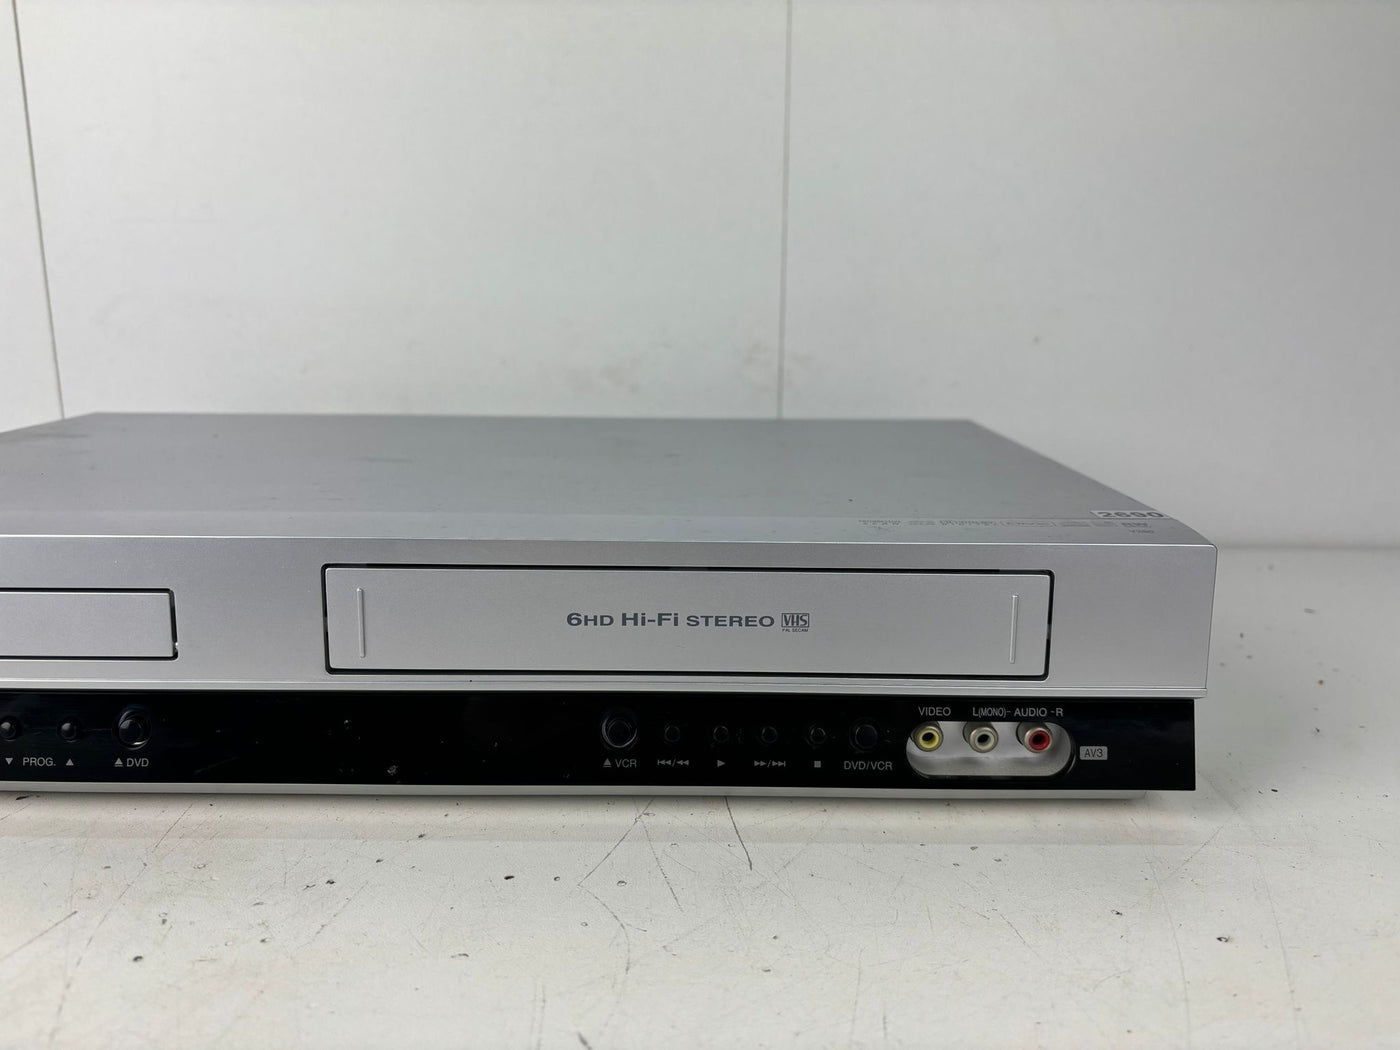 LG V260 Video Cassette Recorder / DVD Combi